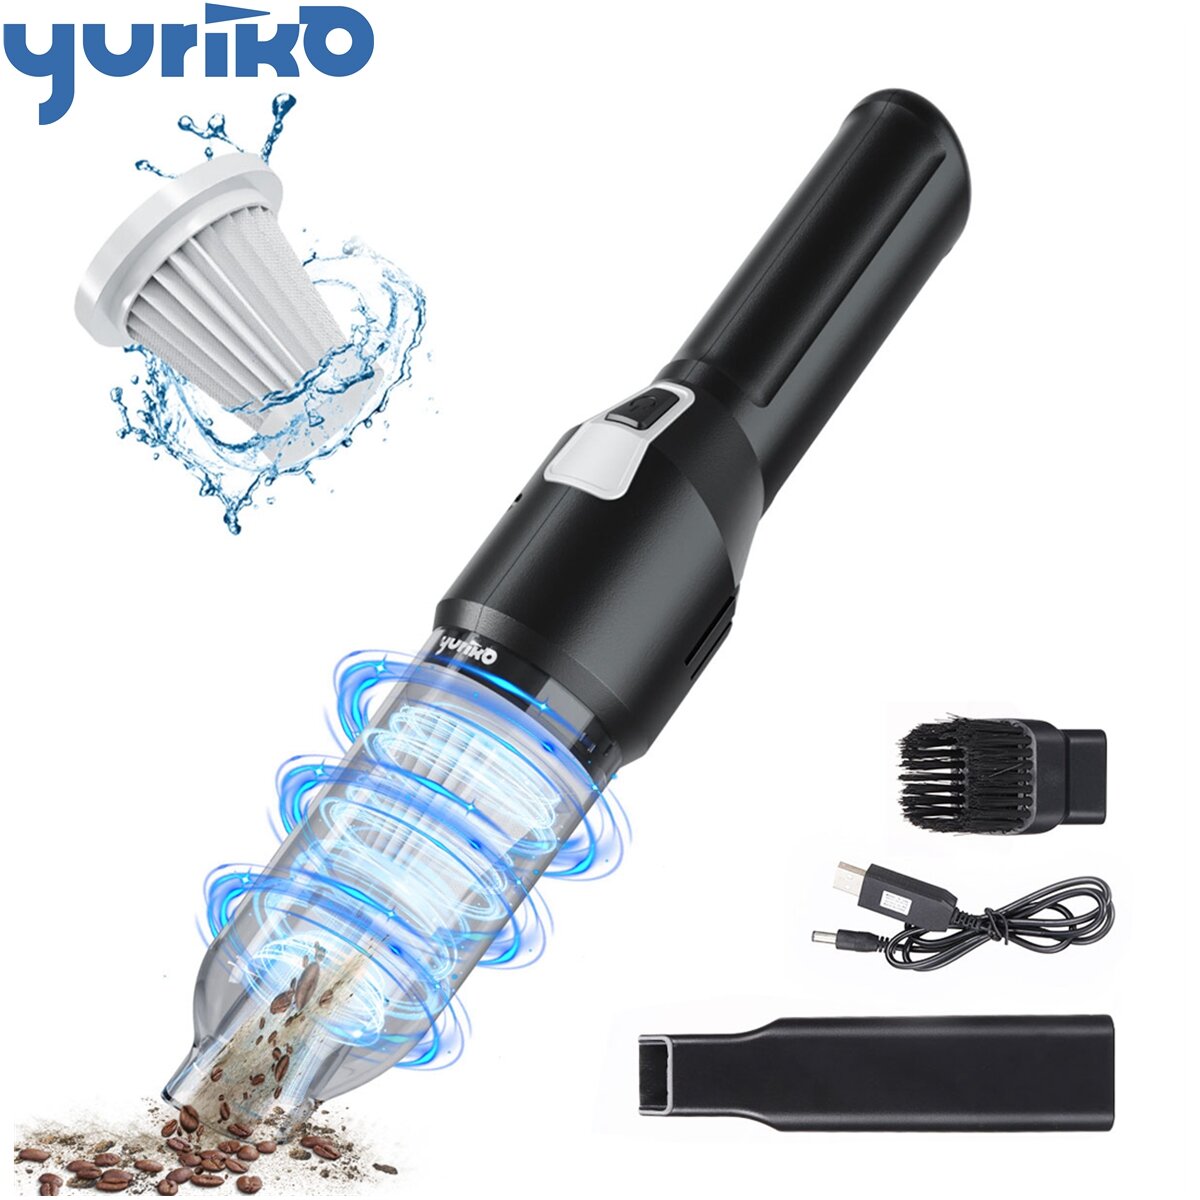 YURIKO YK-VC01 Drahtloser Mehrzweck-Handstaubsauger 150 W 4500 Pa Saugleistung Beseitigen Sie jede Unordnung für die Hau